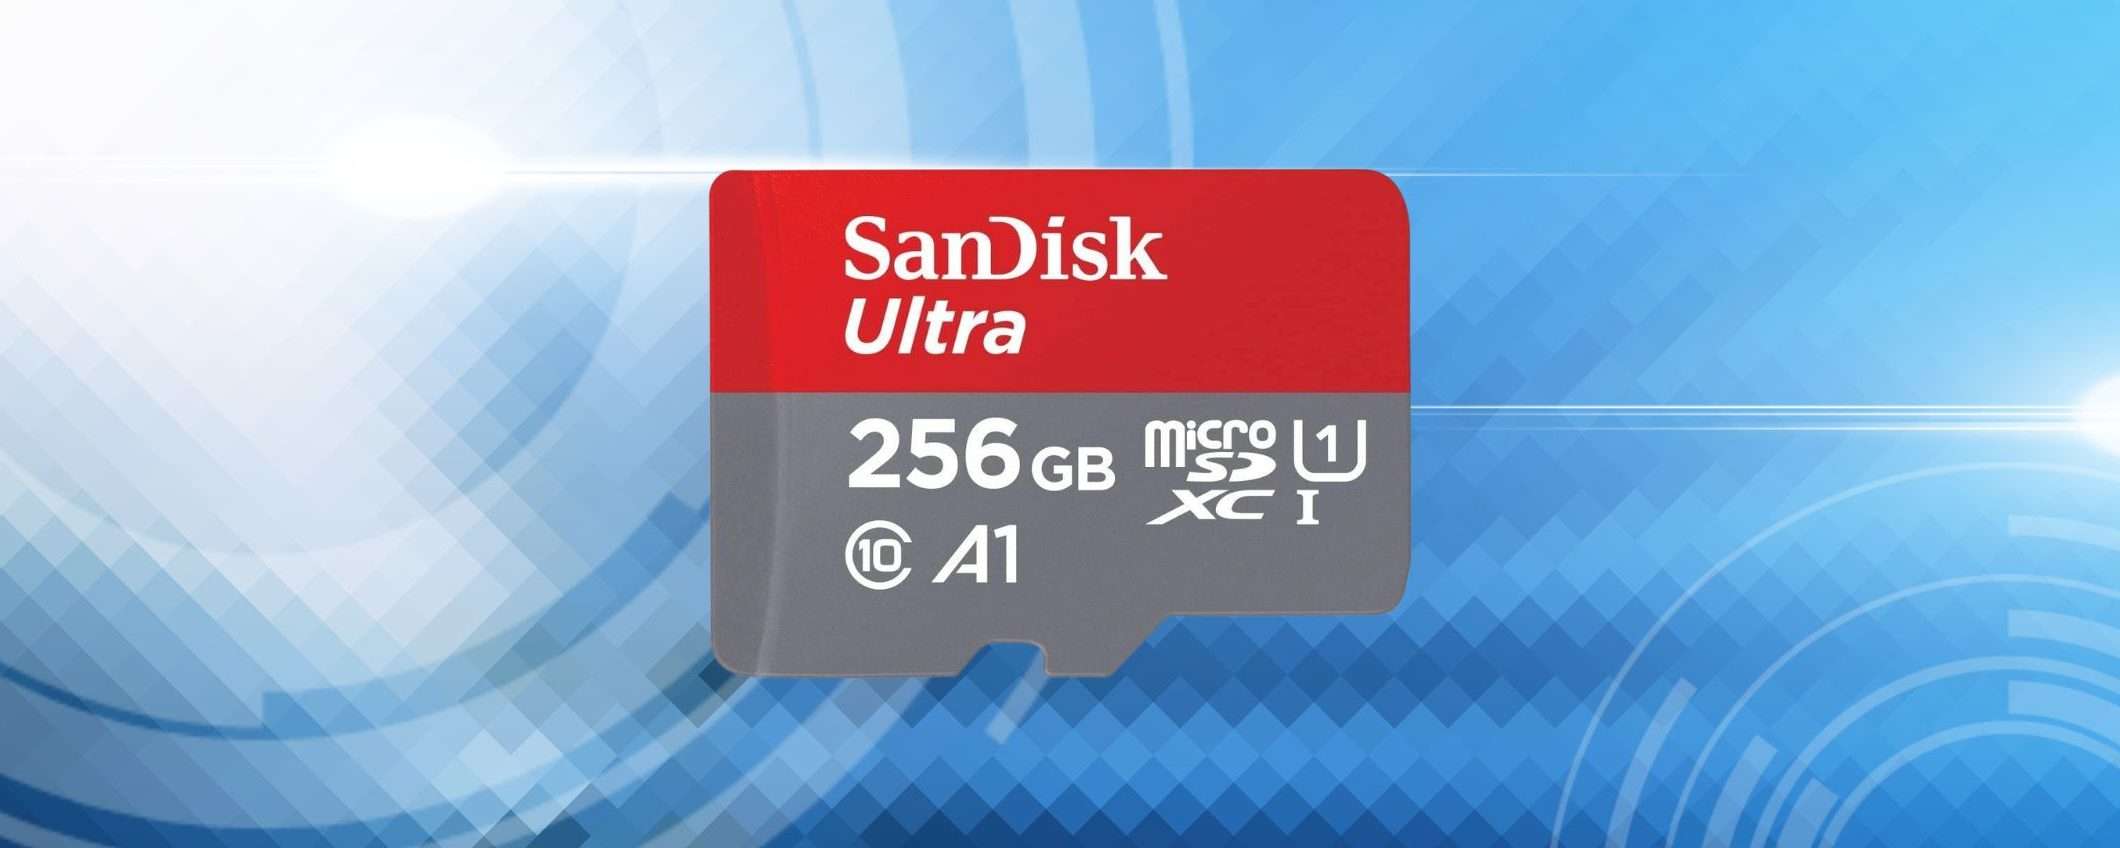 MicroSD 256GB velocissima e in SUPER SCONTO: risparmi il 64%